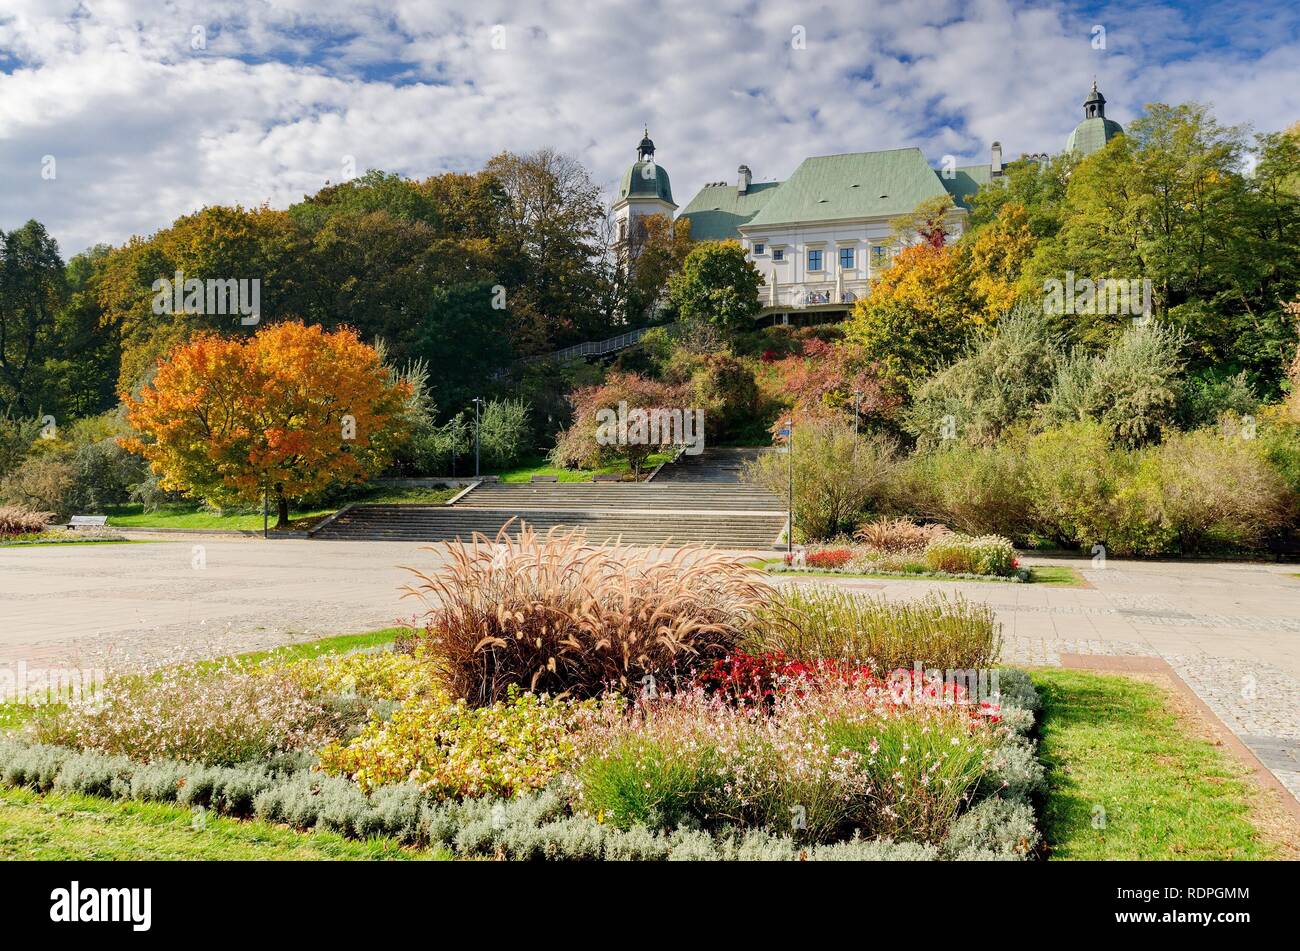 La province de Mazovie, VARSOVIE / Pologne - 11 octobre 2018 : Château Ujazdow, Centre d'art contemporain, vue formulaire Ujazdow Park. Banque D'Images